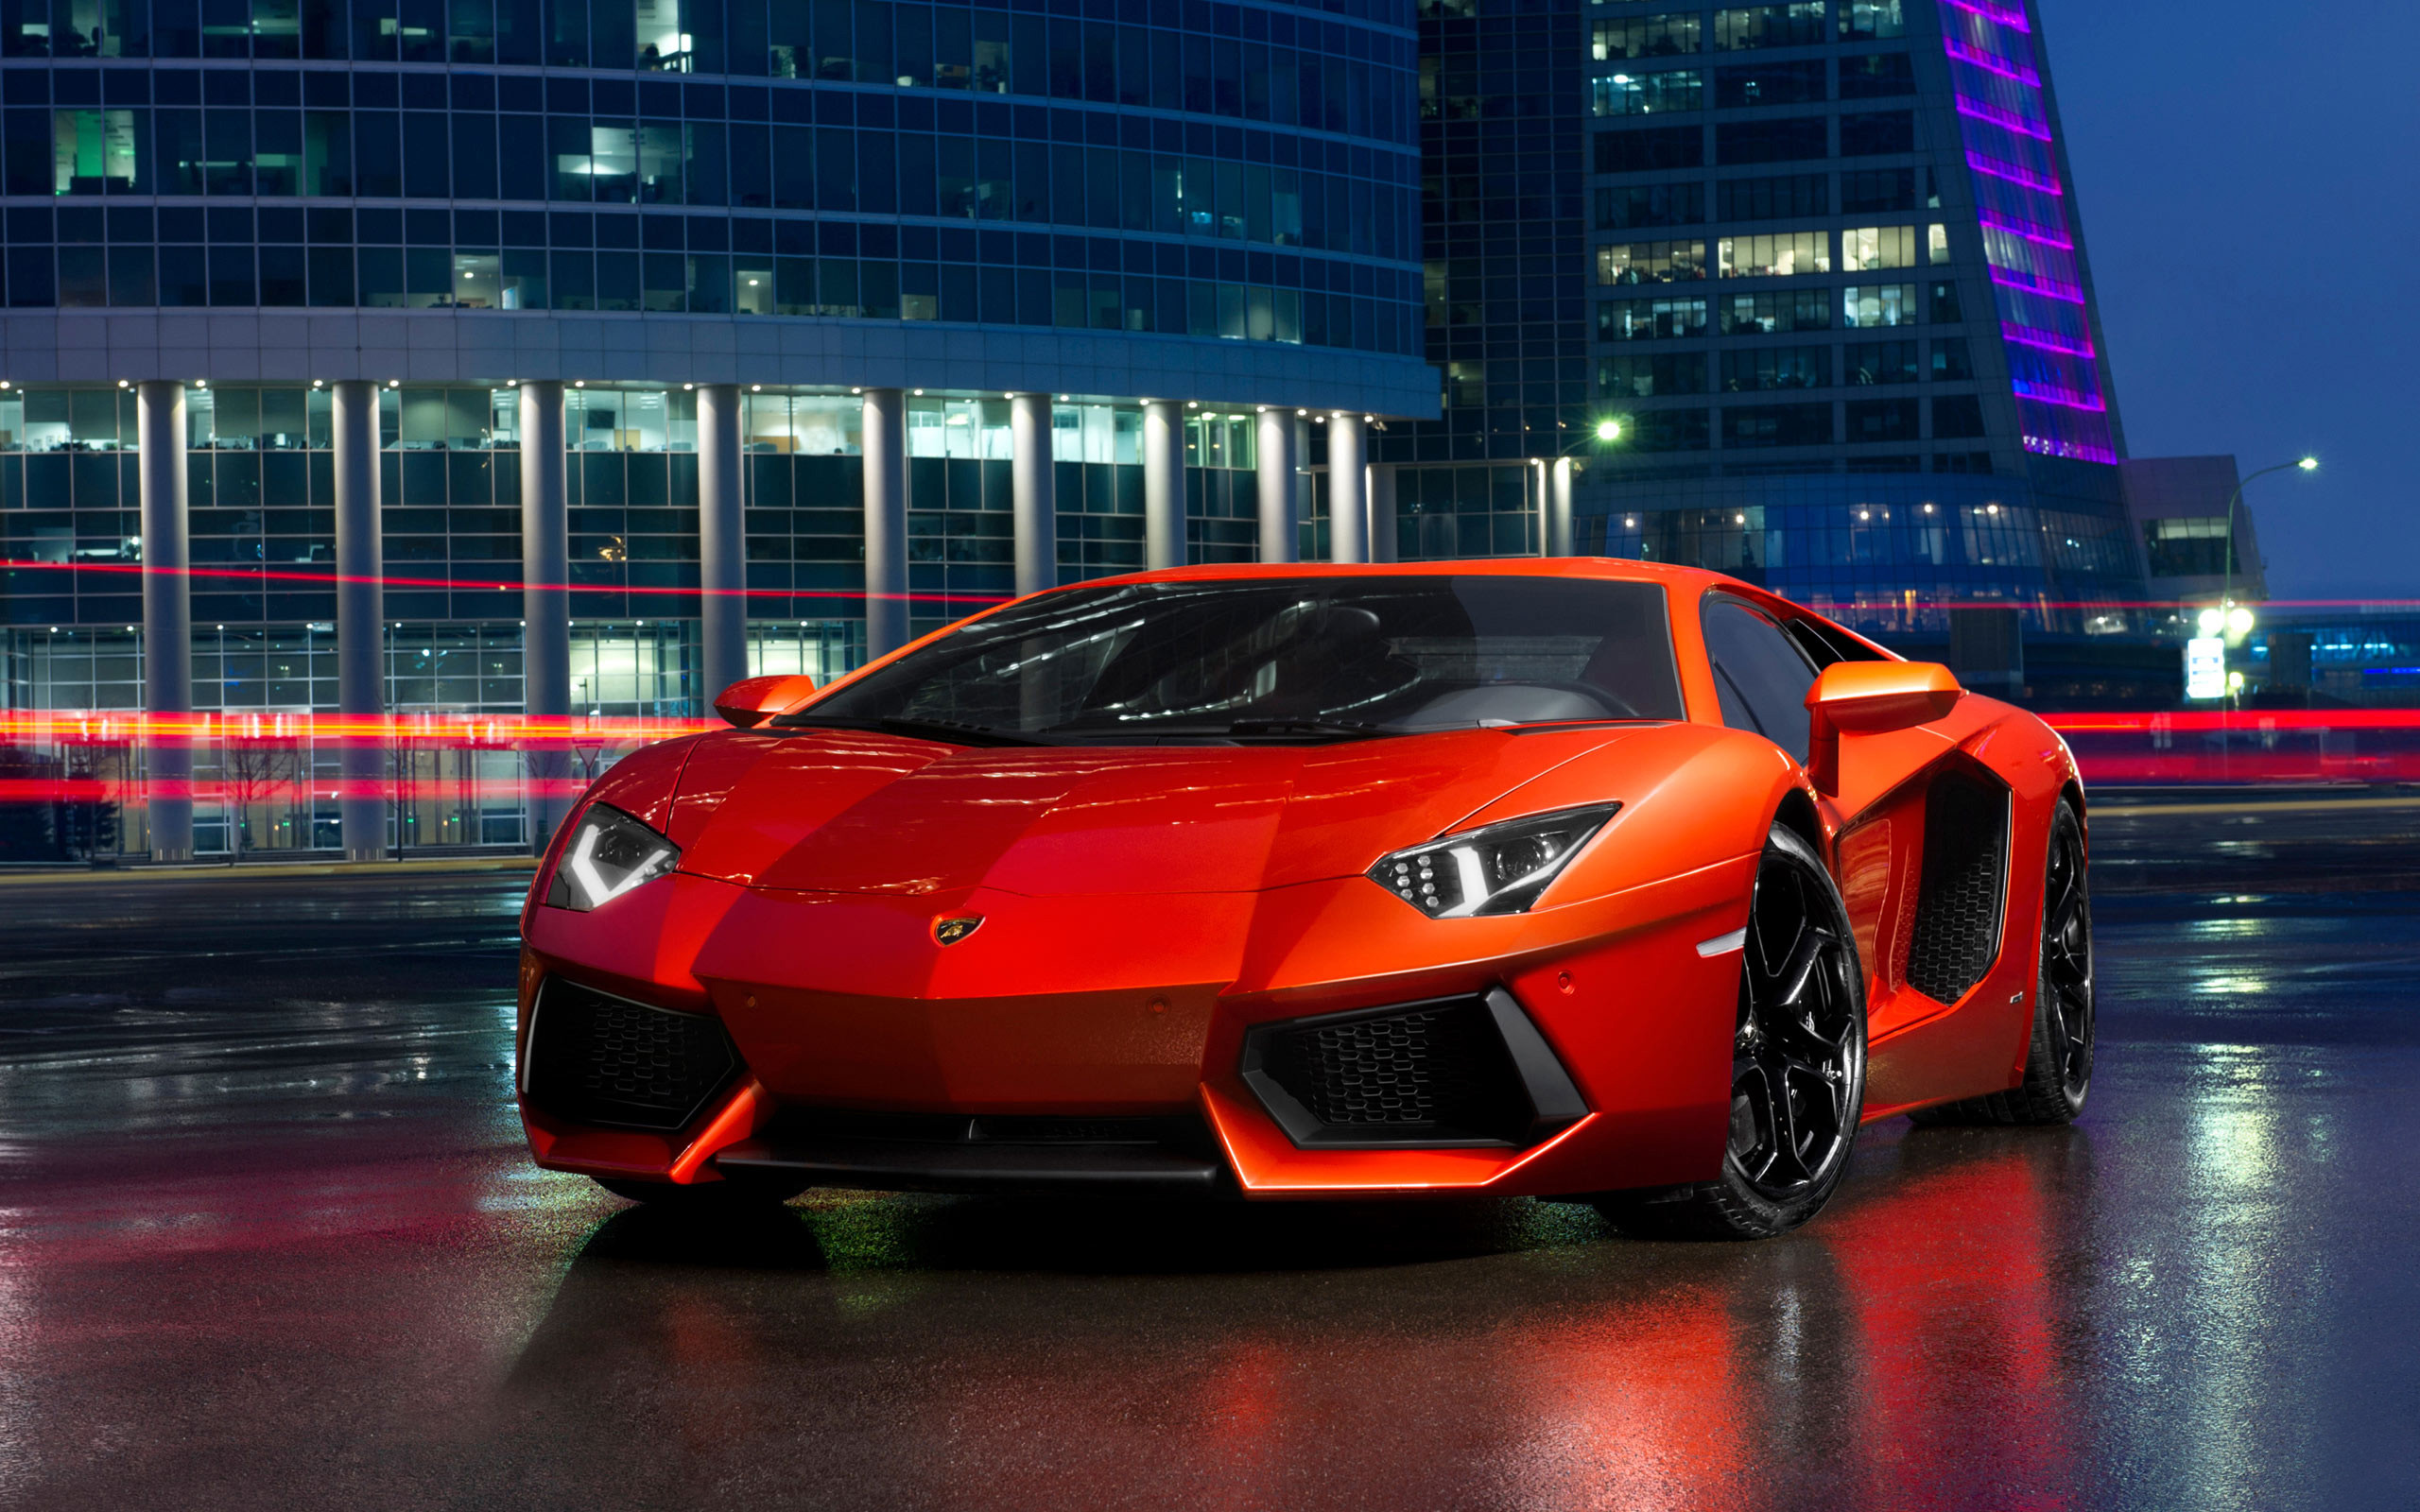 Hình nền Lamborghini (62+ hình ảnh): Tận hưởng những hình nền đẹp hoành tráng của Lamborghini và biến chiếc máy tính của bạn thành một phiên bản sang trọng và tuyệt đẹp. Với 62+ hình ảnh độ phân giải cao, bạn sẽ chiêm ngưỡng và trầm trồ trước những chiếc siêu xe huyền thoại của Lamborghini. Hãy tải ngay và trang trí cho màn hình của mình những hình nền đẹp nhất.